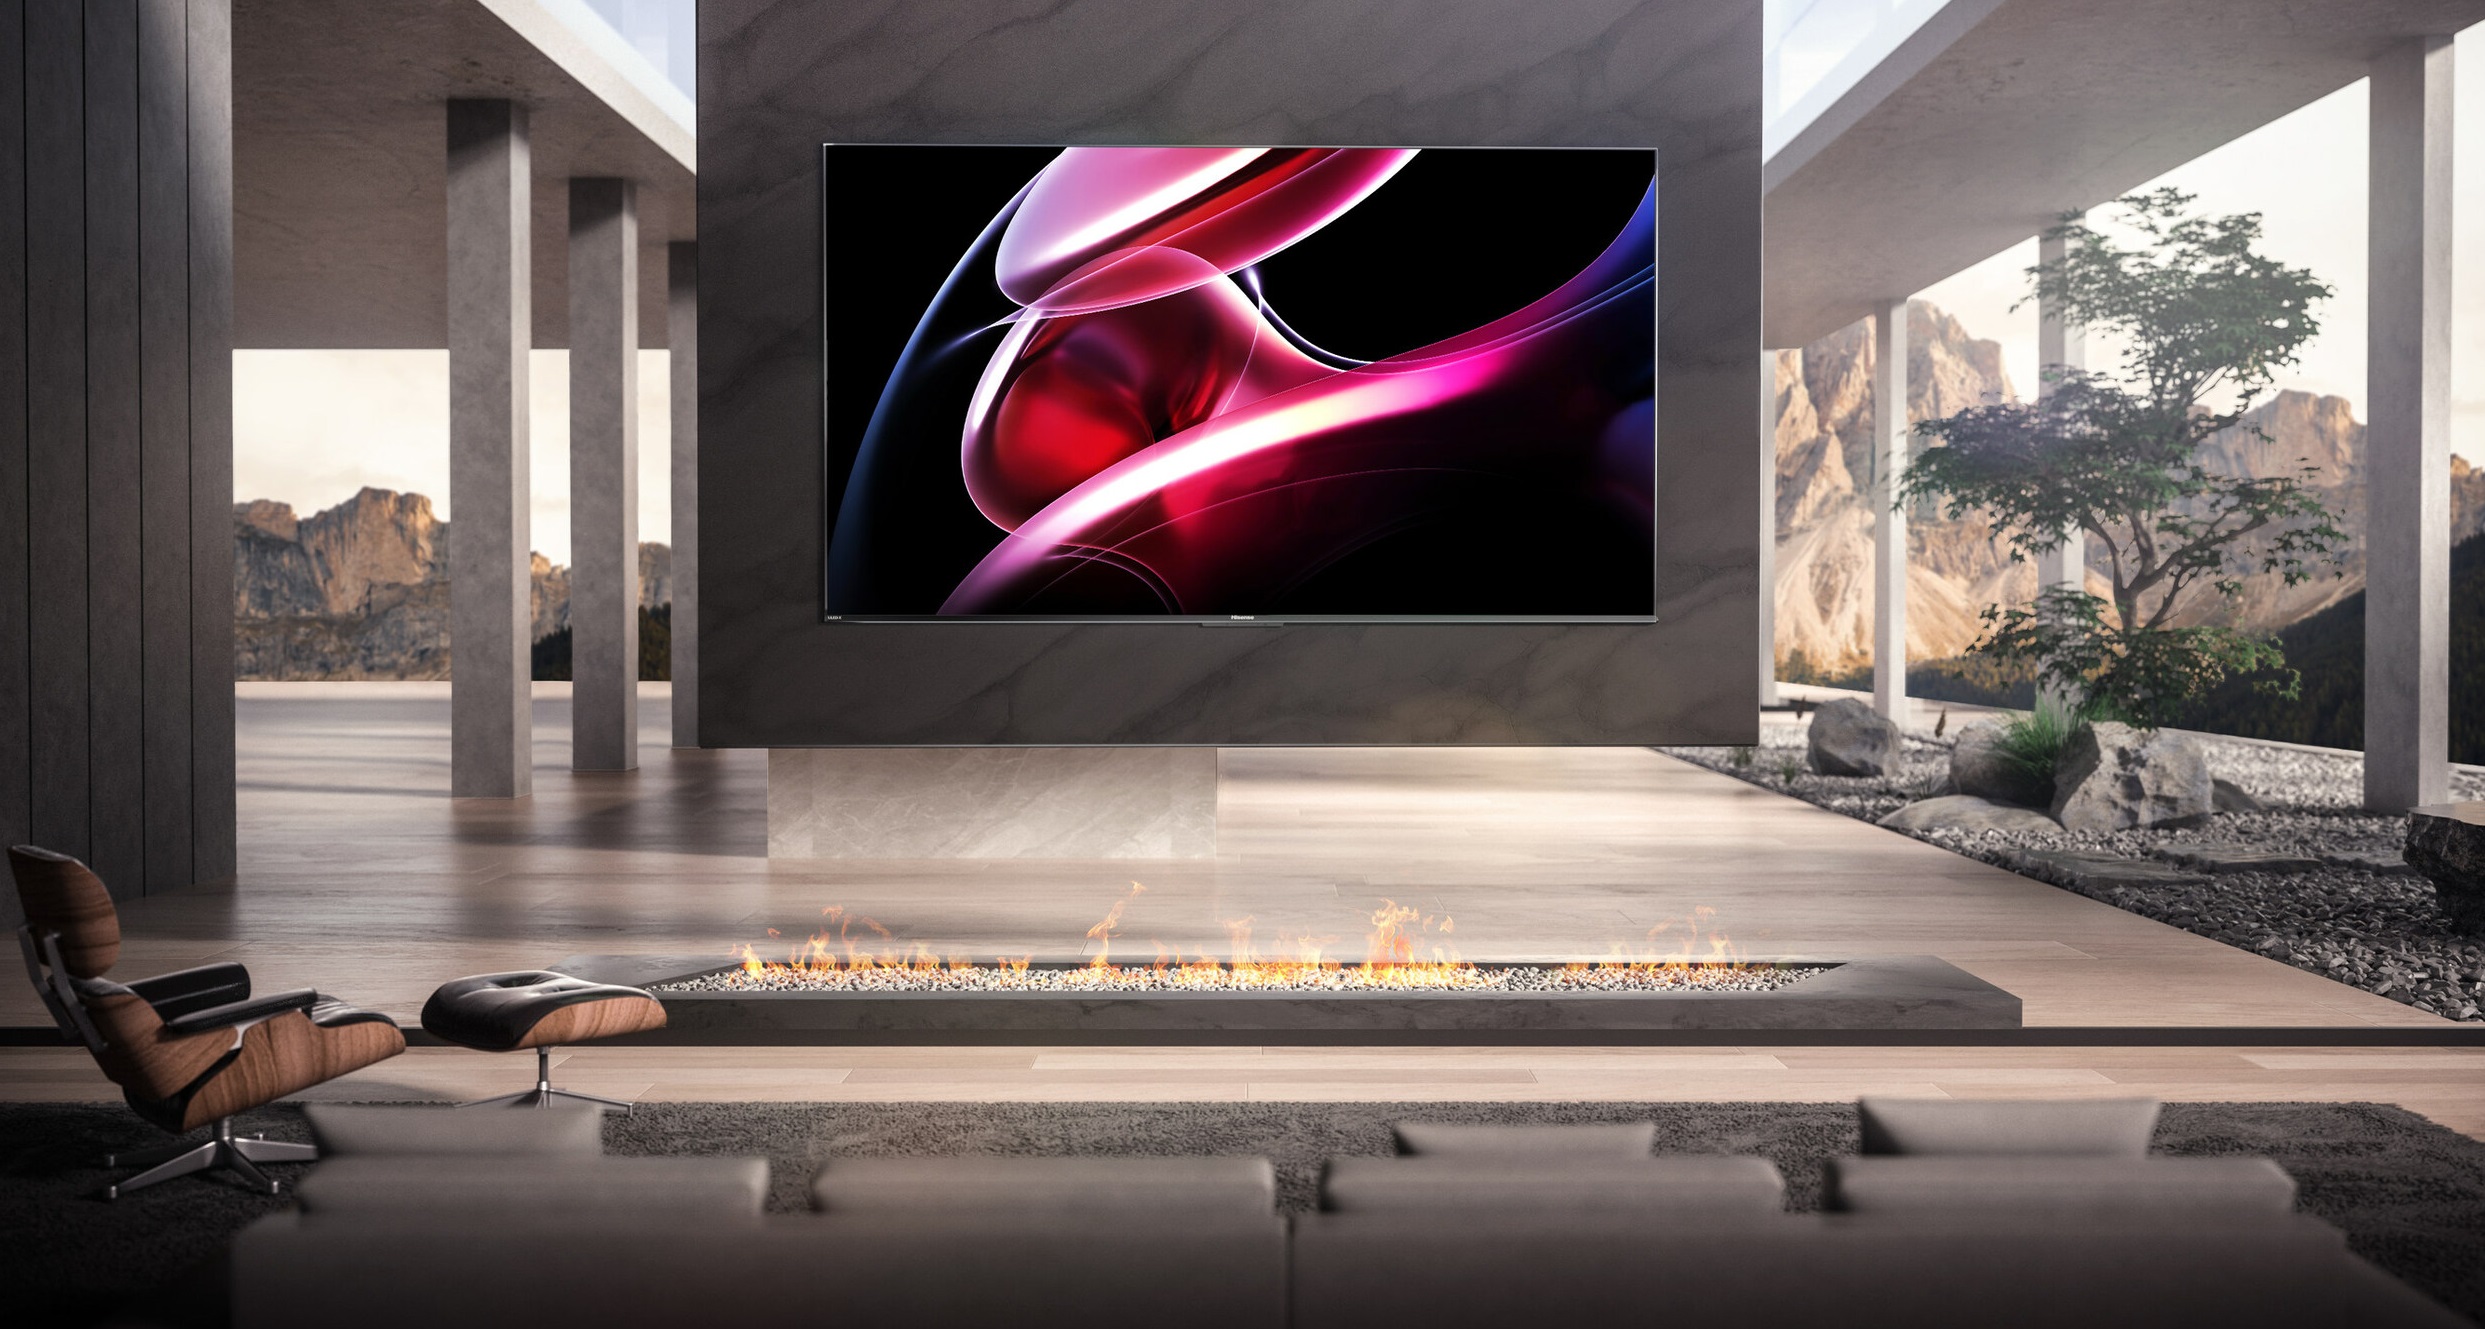 Hisense präsentiert einen 85" 4K Mini-LED-Fernseher mit 2.500 nits Helligkeit und 80W Lautsprechern